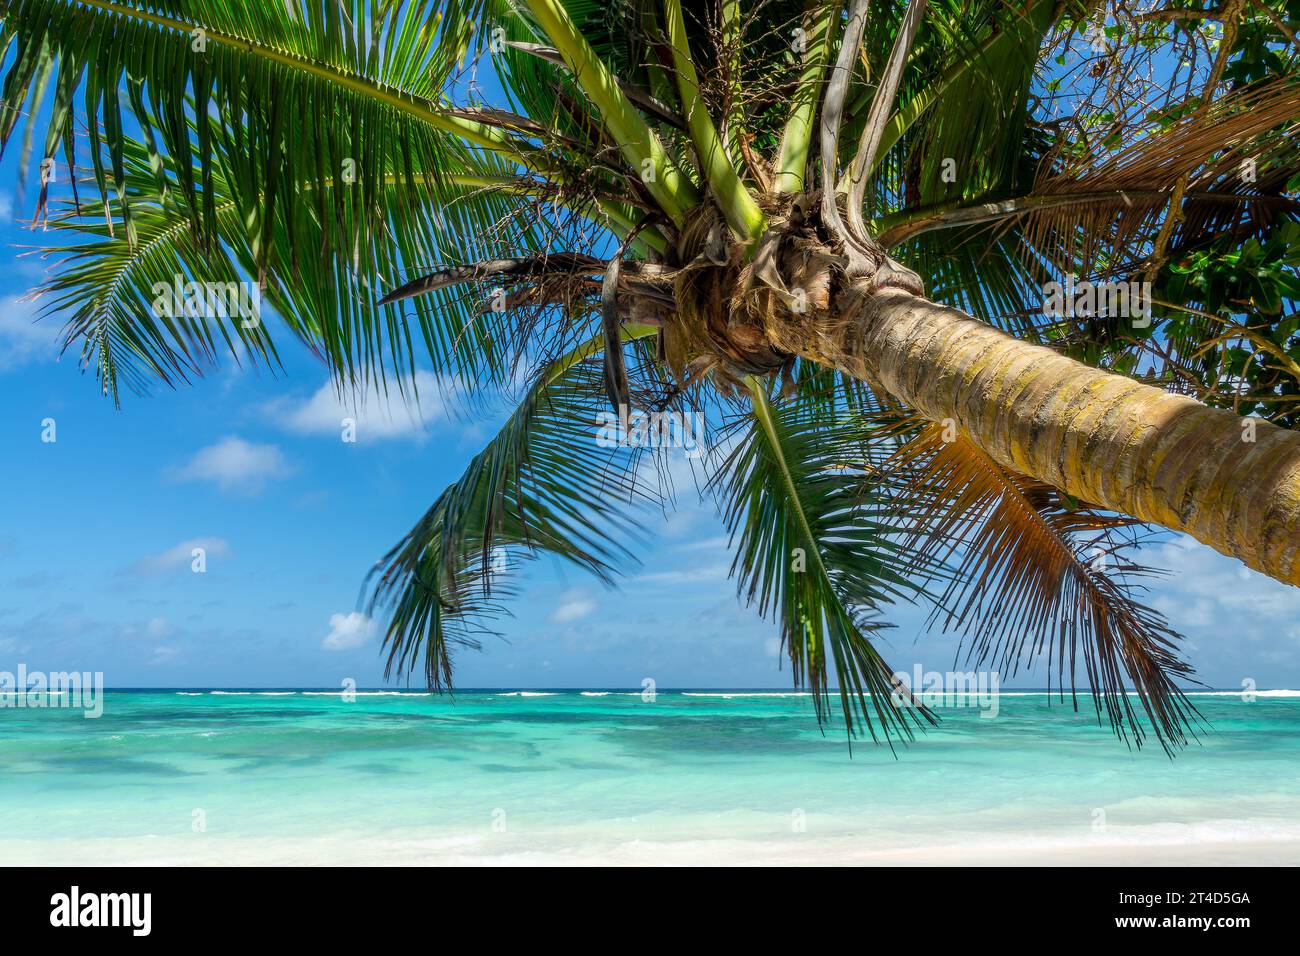 Palmier sur la pittoresque plage de sable tropical Anse Source d'argent, île de la Digue, Seychelles Banque D'Images